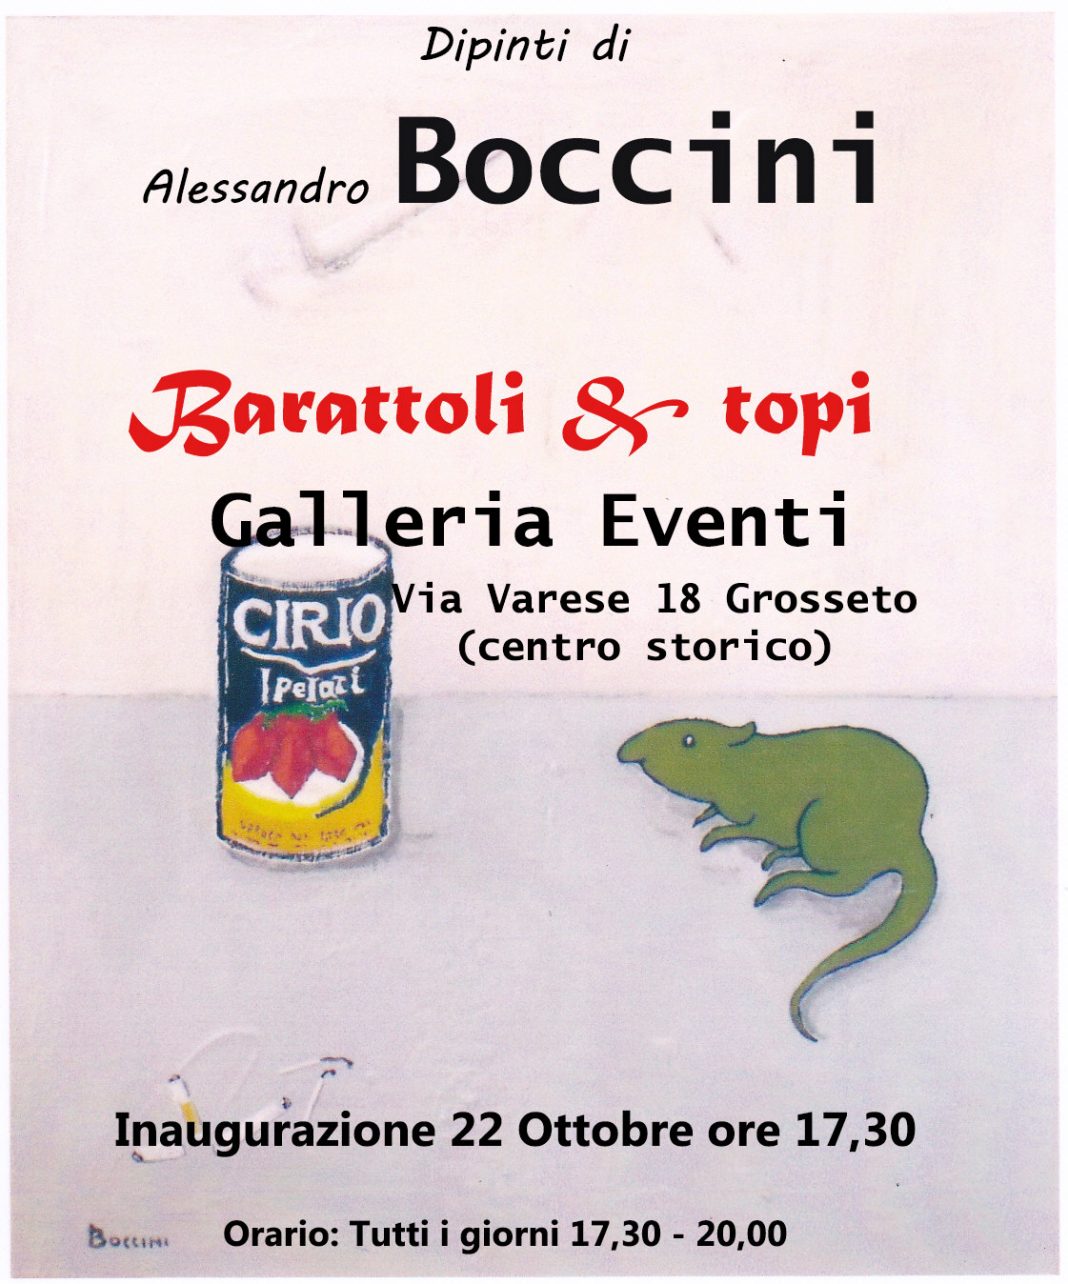 Alessandro Boccini – Barattoli & topihttps://www.exibart.com/repository/media/eventi/2015/10/alessandro-boccini-8211-barattoli-amp-topi-1068x1284.jpg